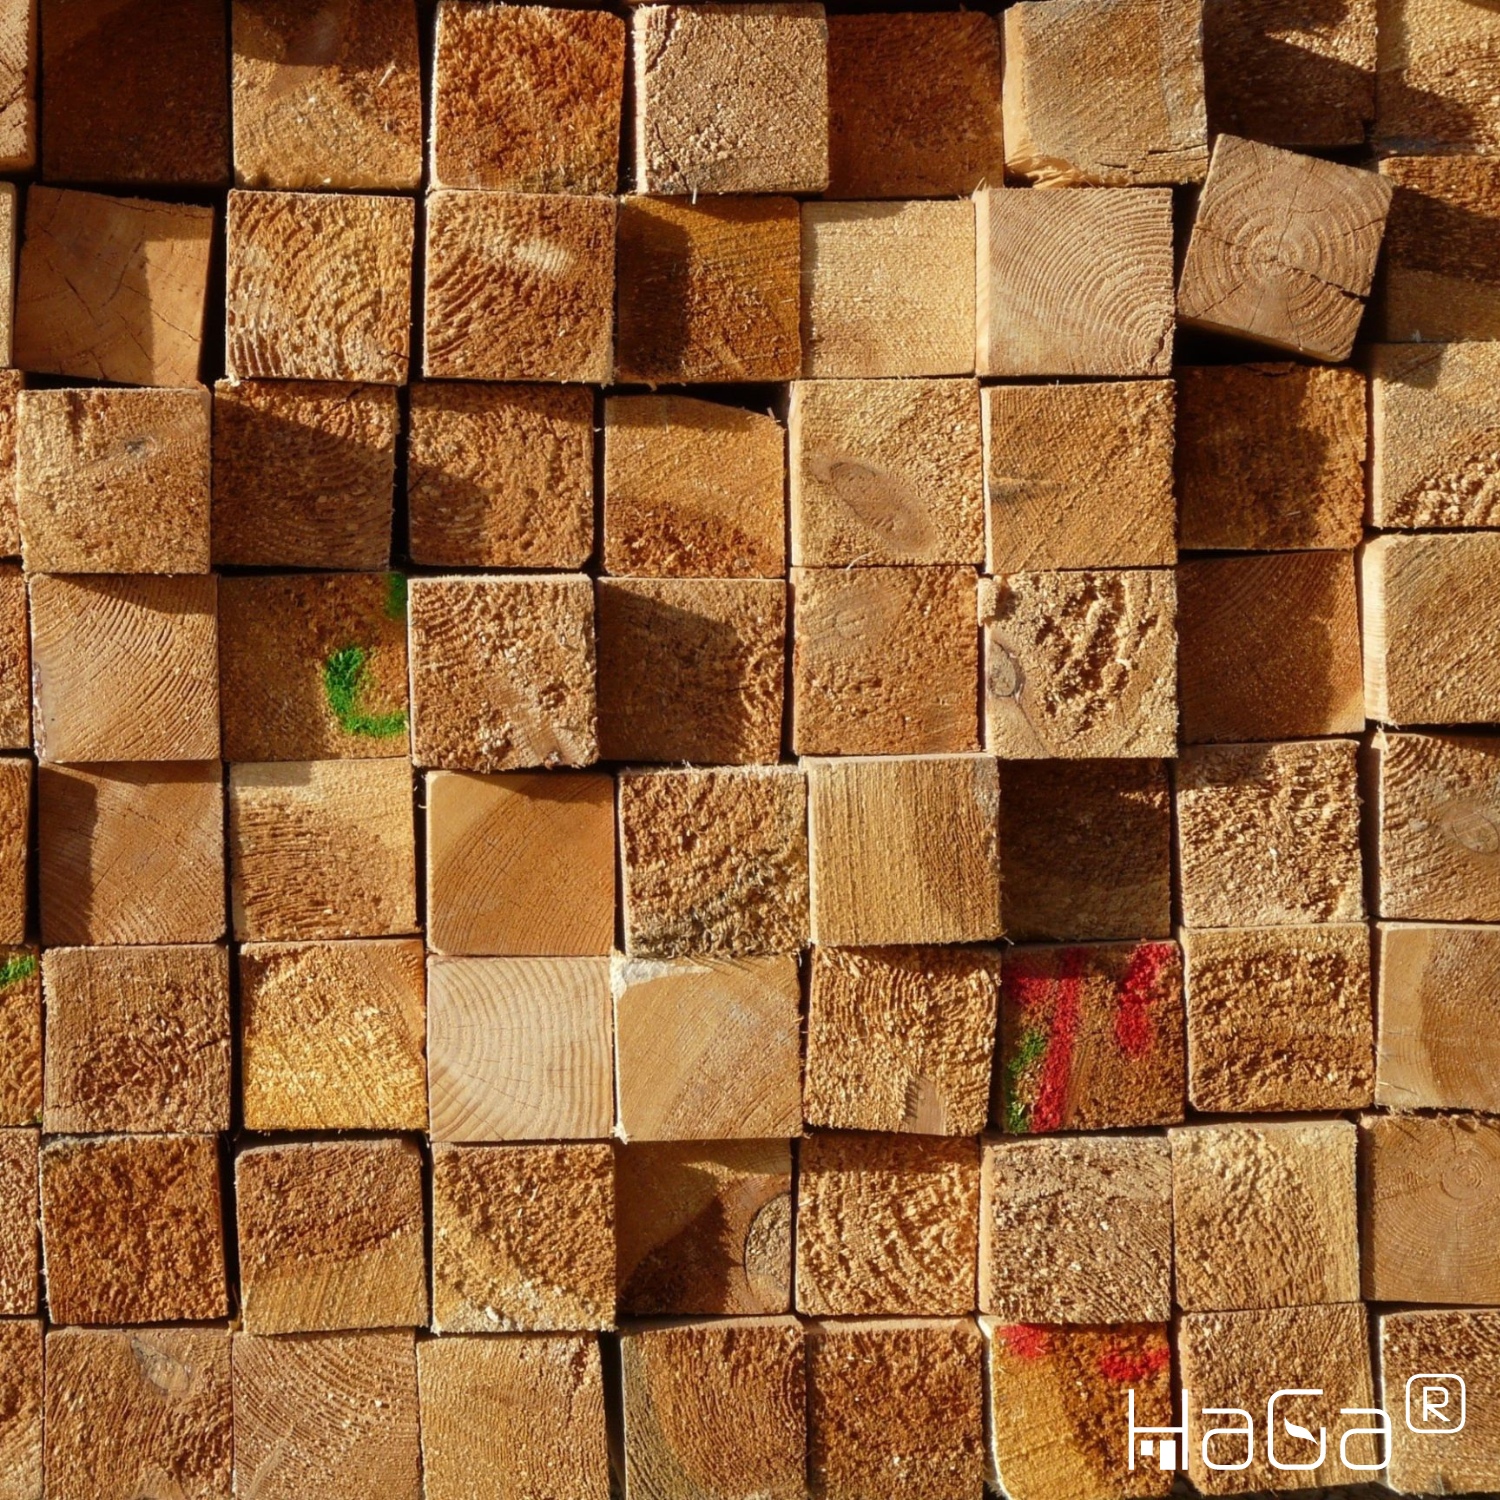 Robusti pali in legno da 1 m, 1,5 m e 1,8 m di altezza e 7 cm x 7 cm per applicazioni versatili